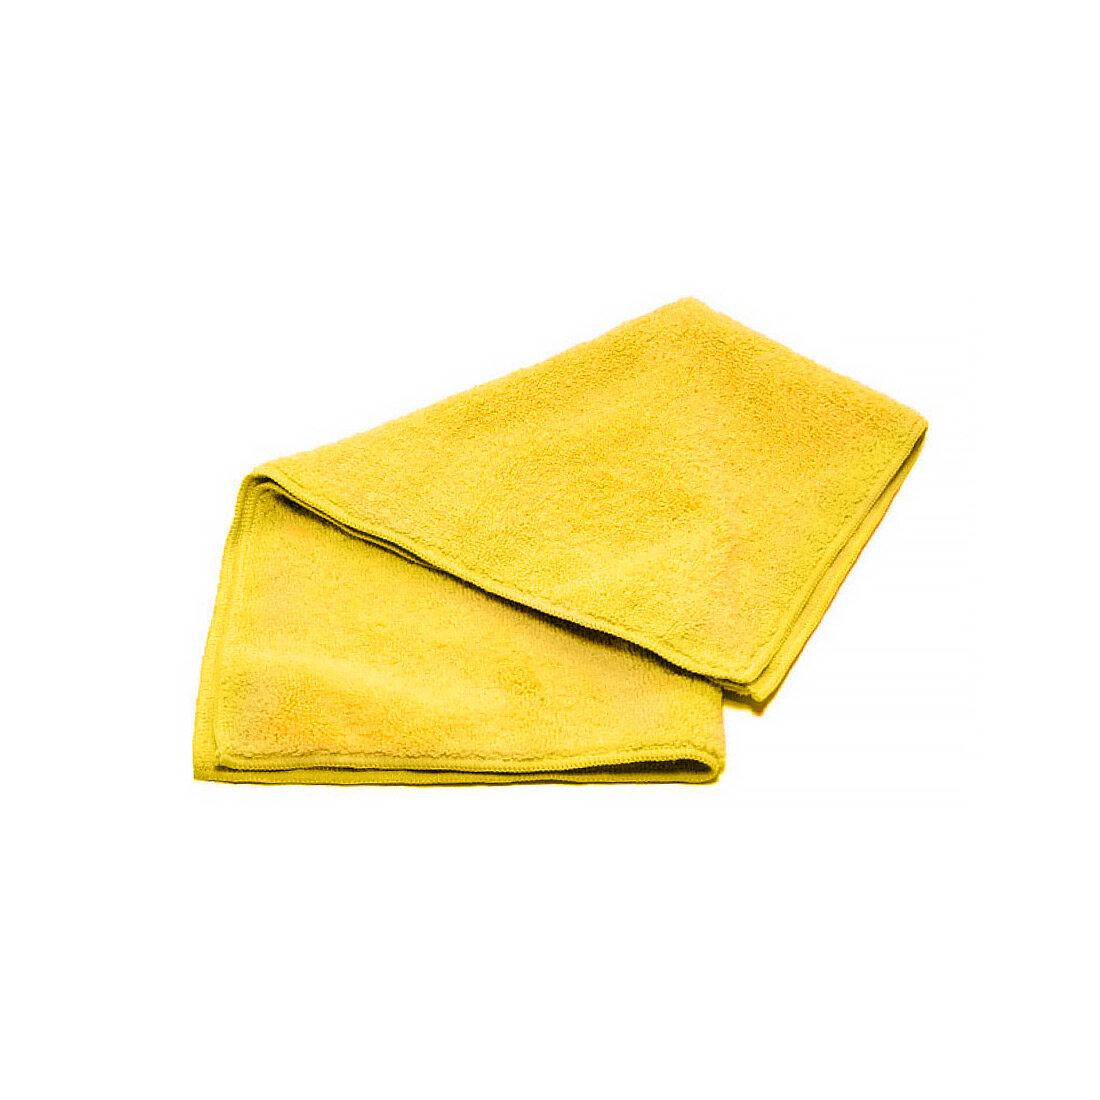 Мягкая салфетка из микрофибры для уборки и автомобиля желтая плотность 220 г./м2. размер 40 x 40 см.